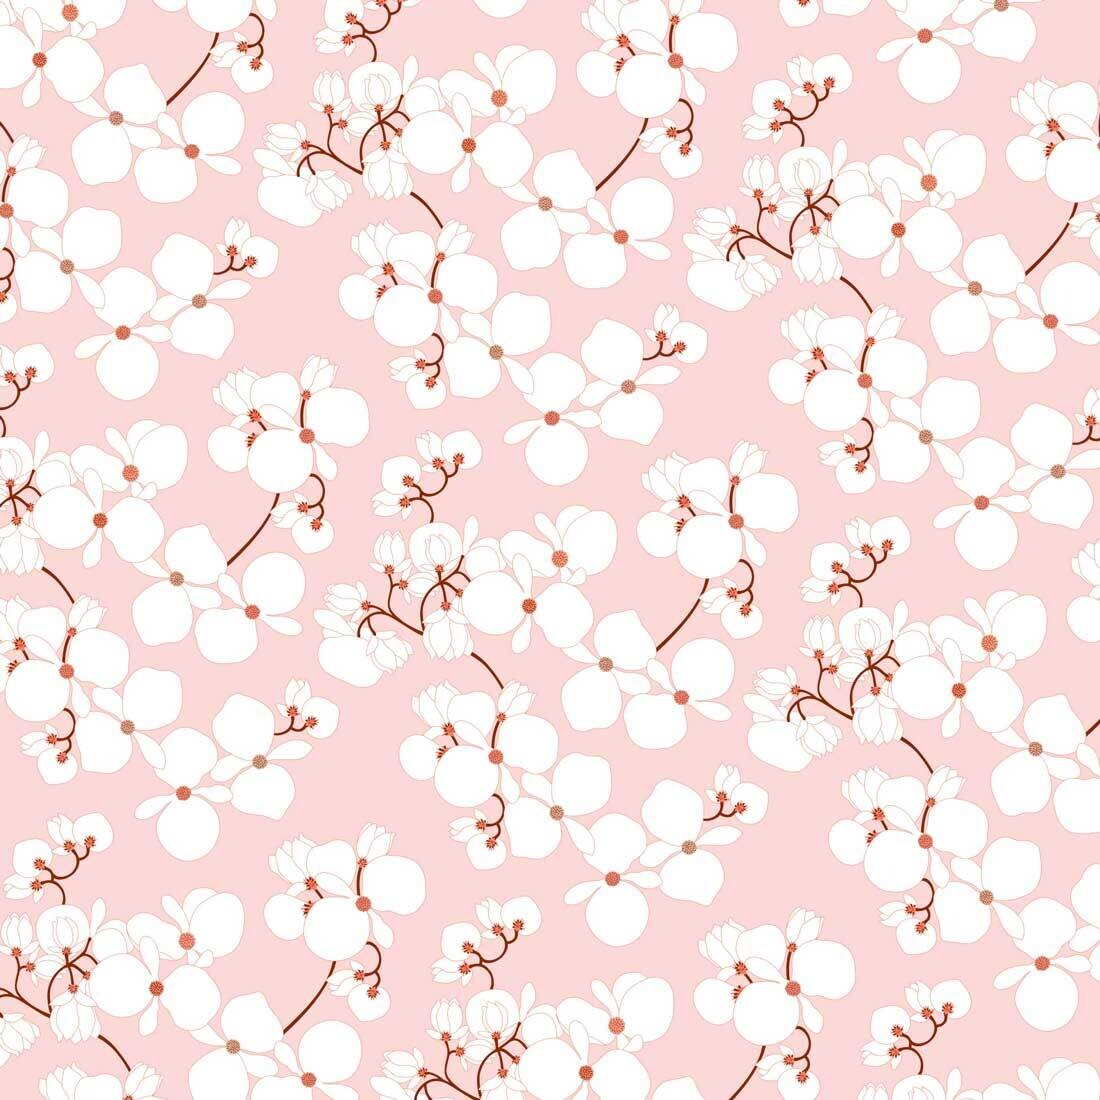 Decoupage Paper Napkins - Floral - Bridget Cherry (1 Sheet)